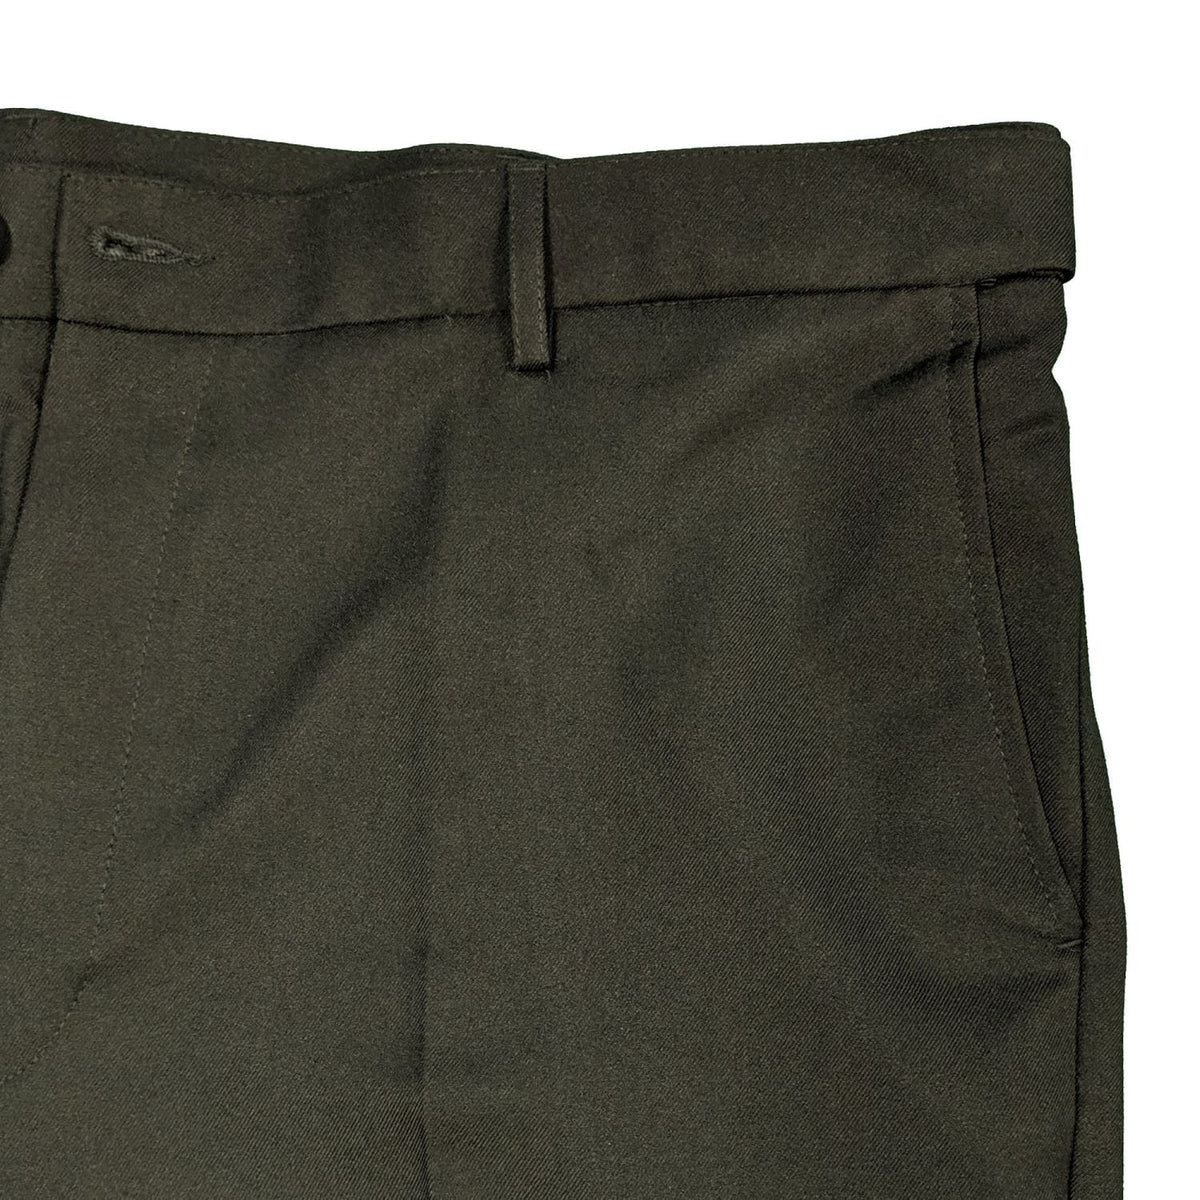 farah trousers 263205 black 1 back pocket 2 front pockets 42 44